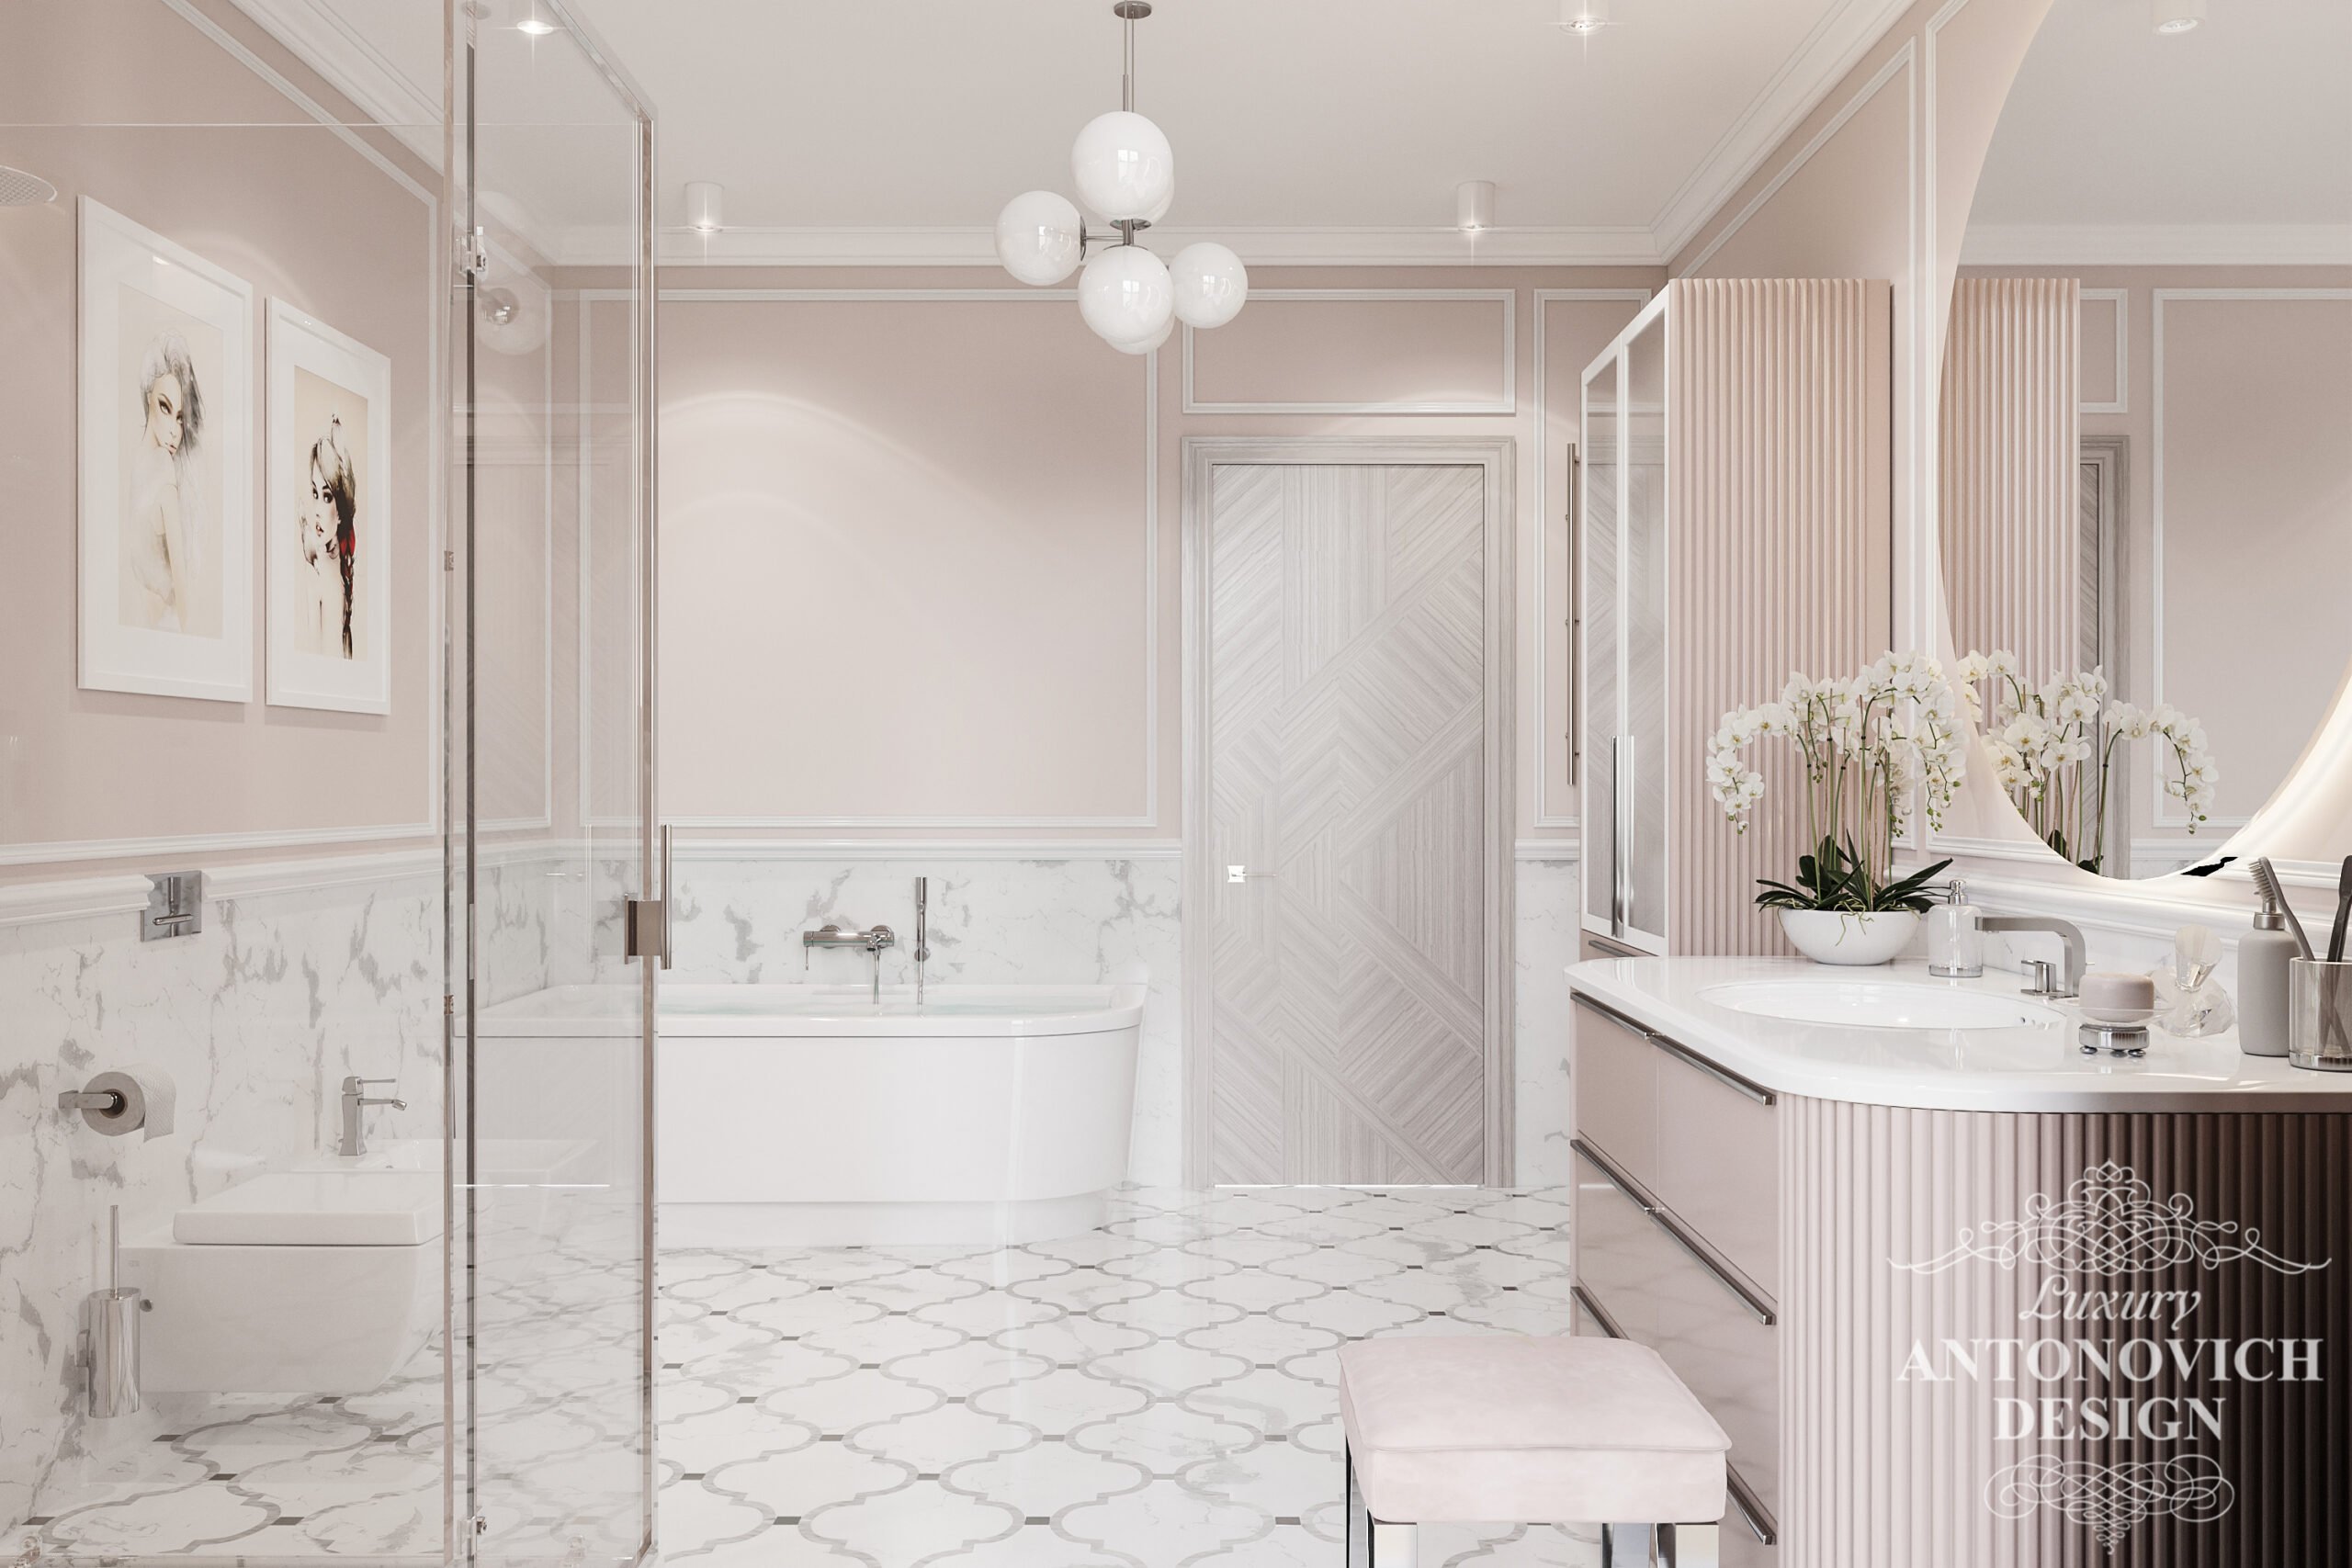 Итальянский мрамор нежно-розового оттенка с ярким освещением и утонченным декором в дизайне ванной для девушки